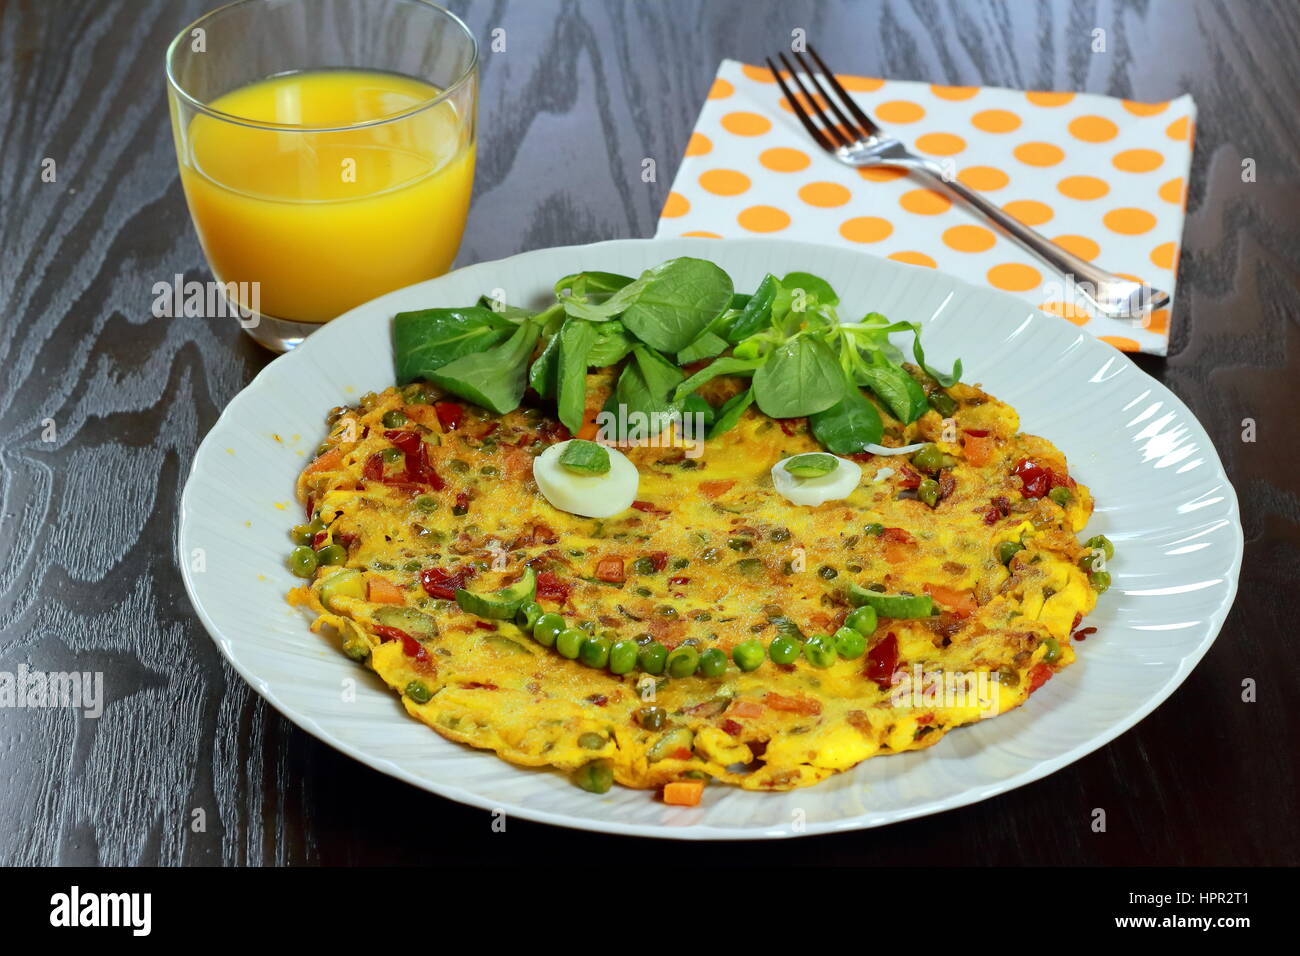 Omelette végétarienne smiling for kids fiche prêt à être servi dans l'alimentation des enfants - plat blanc sur table en bois foncé avec du jus d'orange, doublures et fourchette Banque D'Images